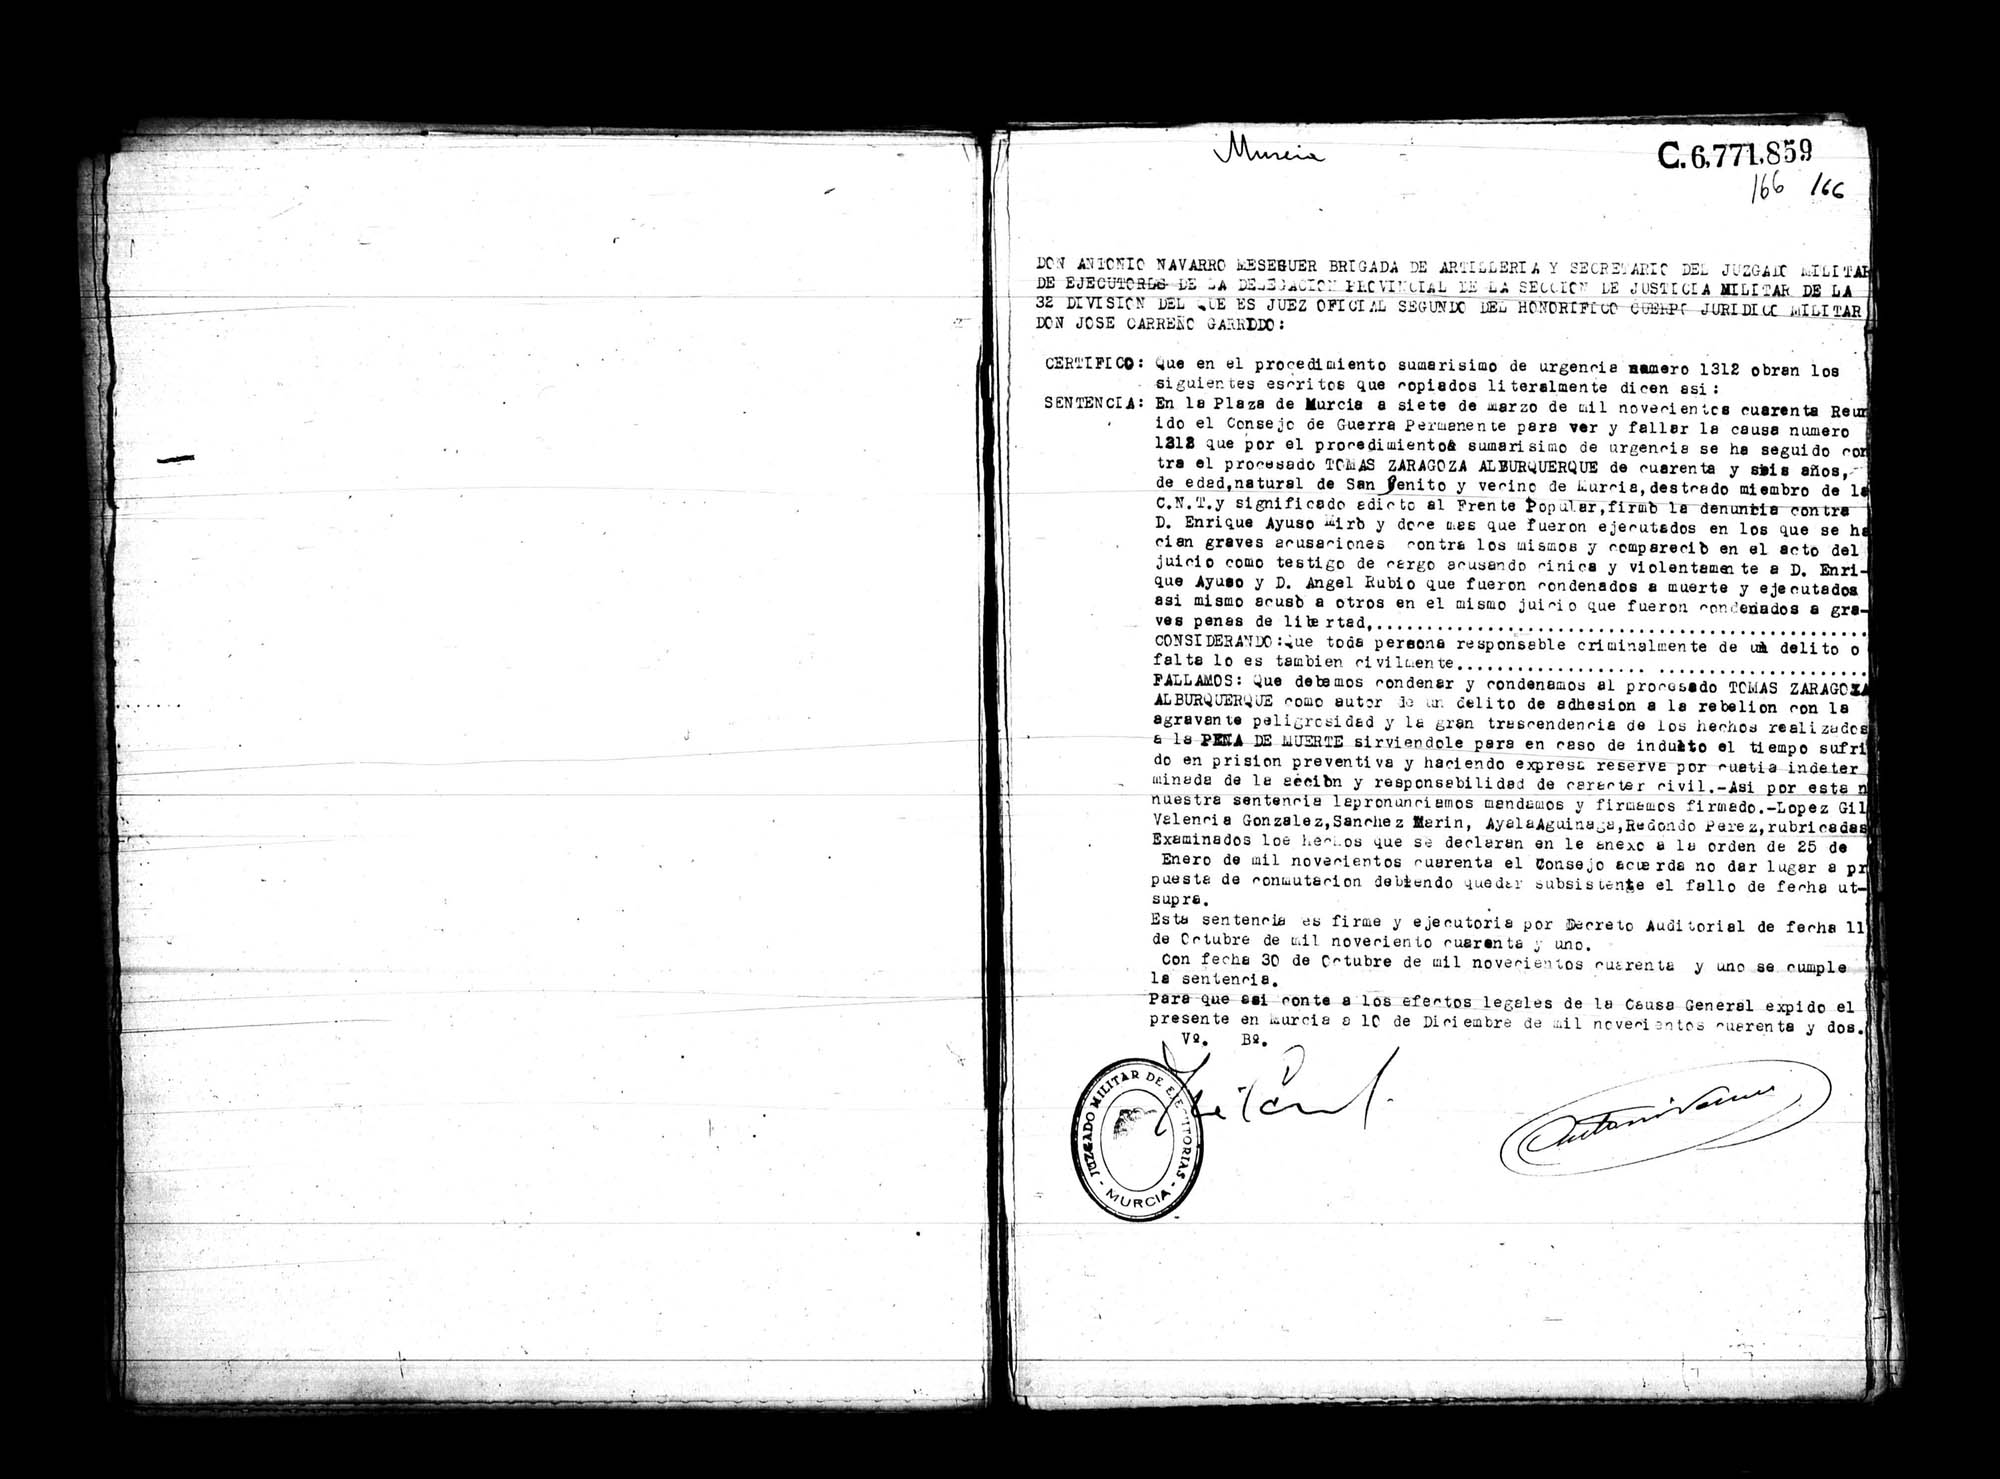 Certificado de la sentencia pronunciada contra Tomás Zaragoza Alburquerque, causa 1312, el 7 de marzo de 1940 en Murcia.